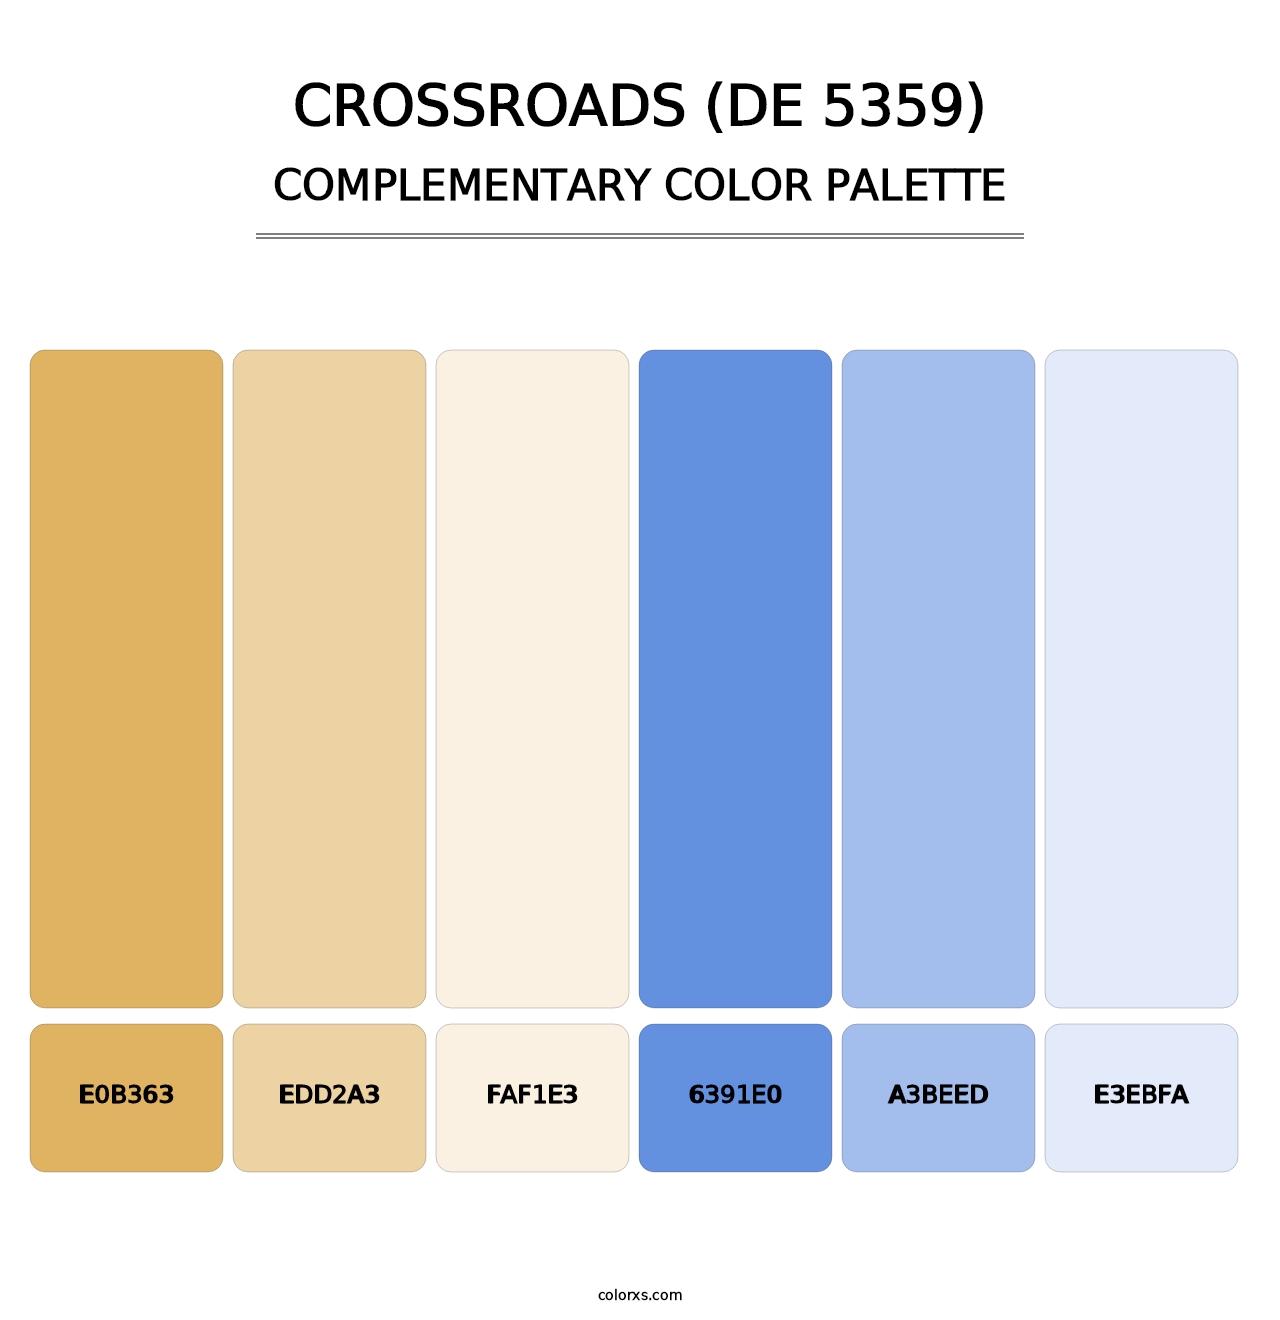 Crossroads (DE 5359) - Complementary Color Palette